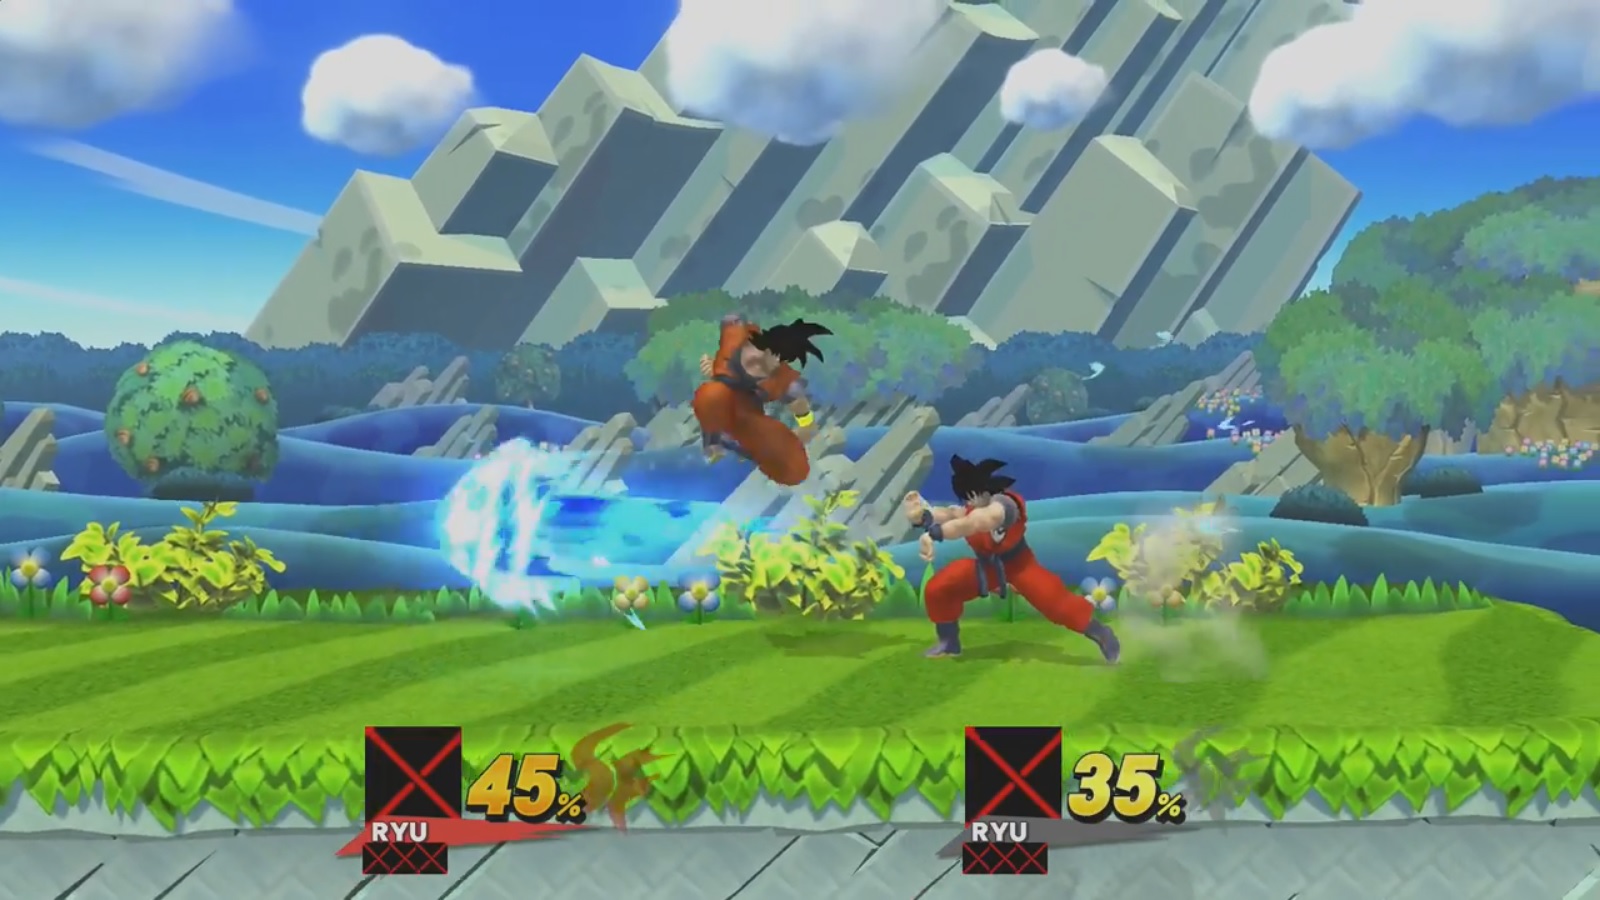 Goku modded into Super Smash Bros. for Wii U